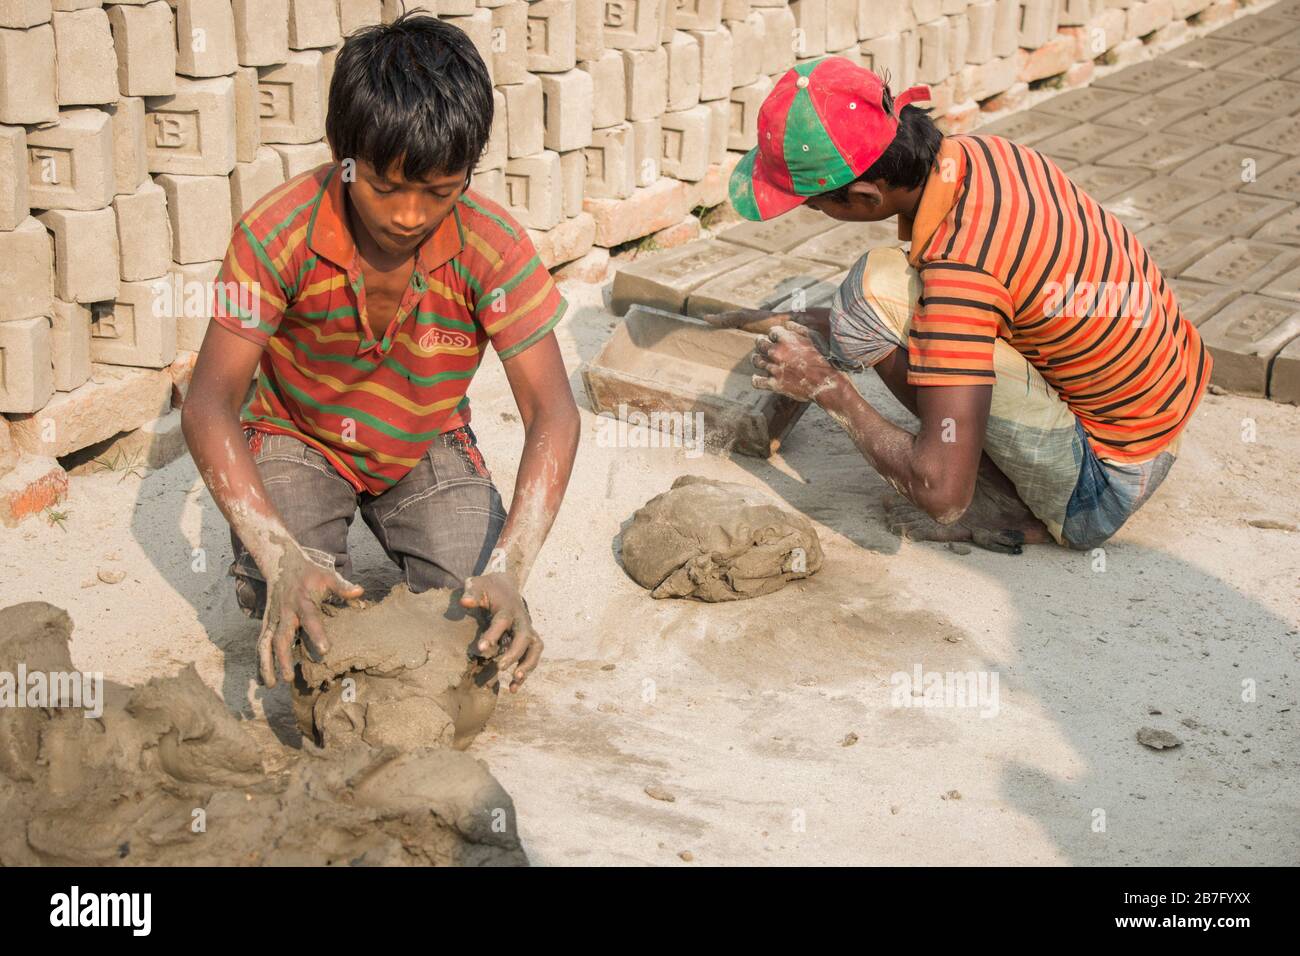 Un travail d'enfant au Bangladesh travaille dans une brique déposée sous un jour ensoleillé. Bien que le travail des enfants soit limité dans cette industrie, il travaille pour la nourriture. Banque D'Images